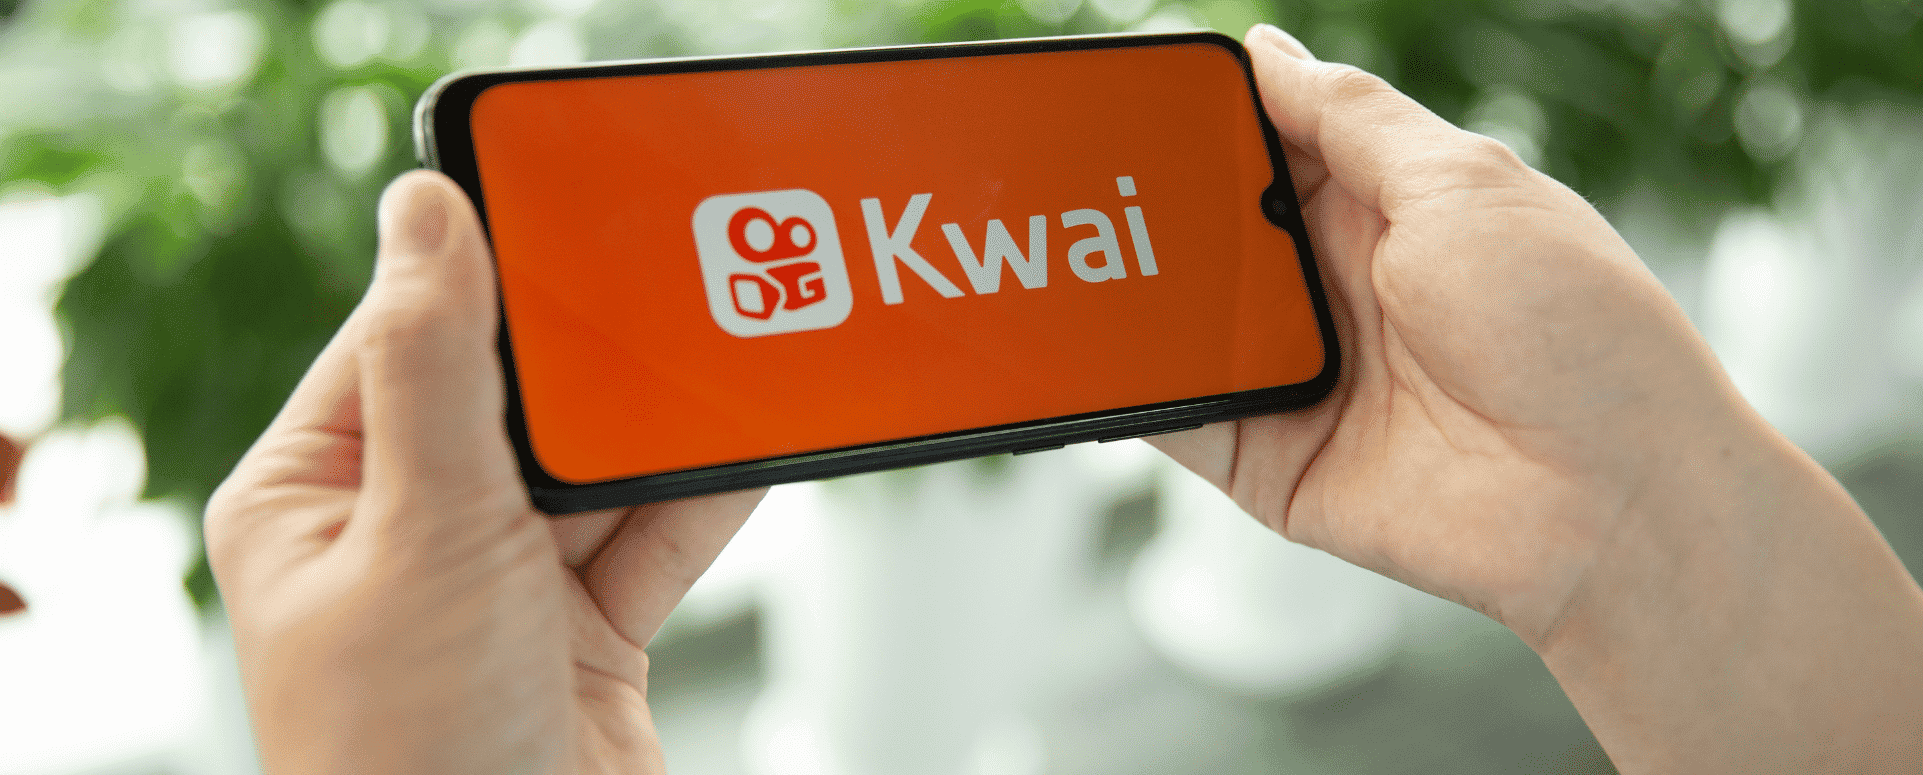 Kwai anuncia novo posicionamento de marca com celebridades